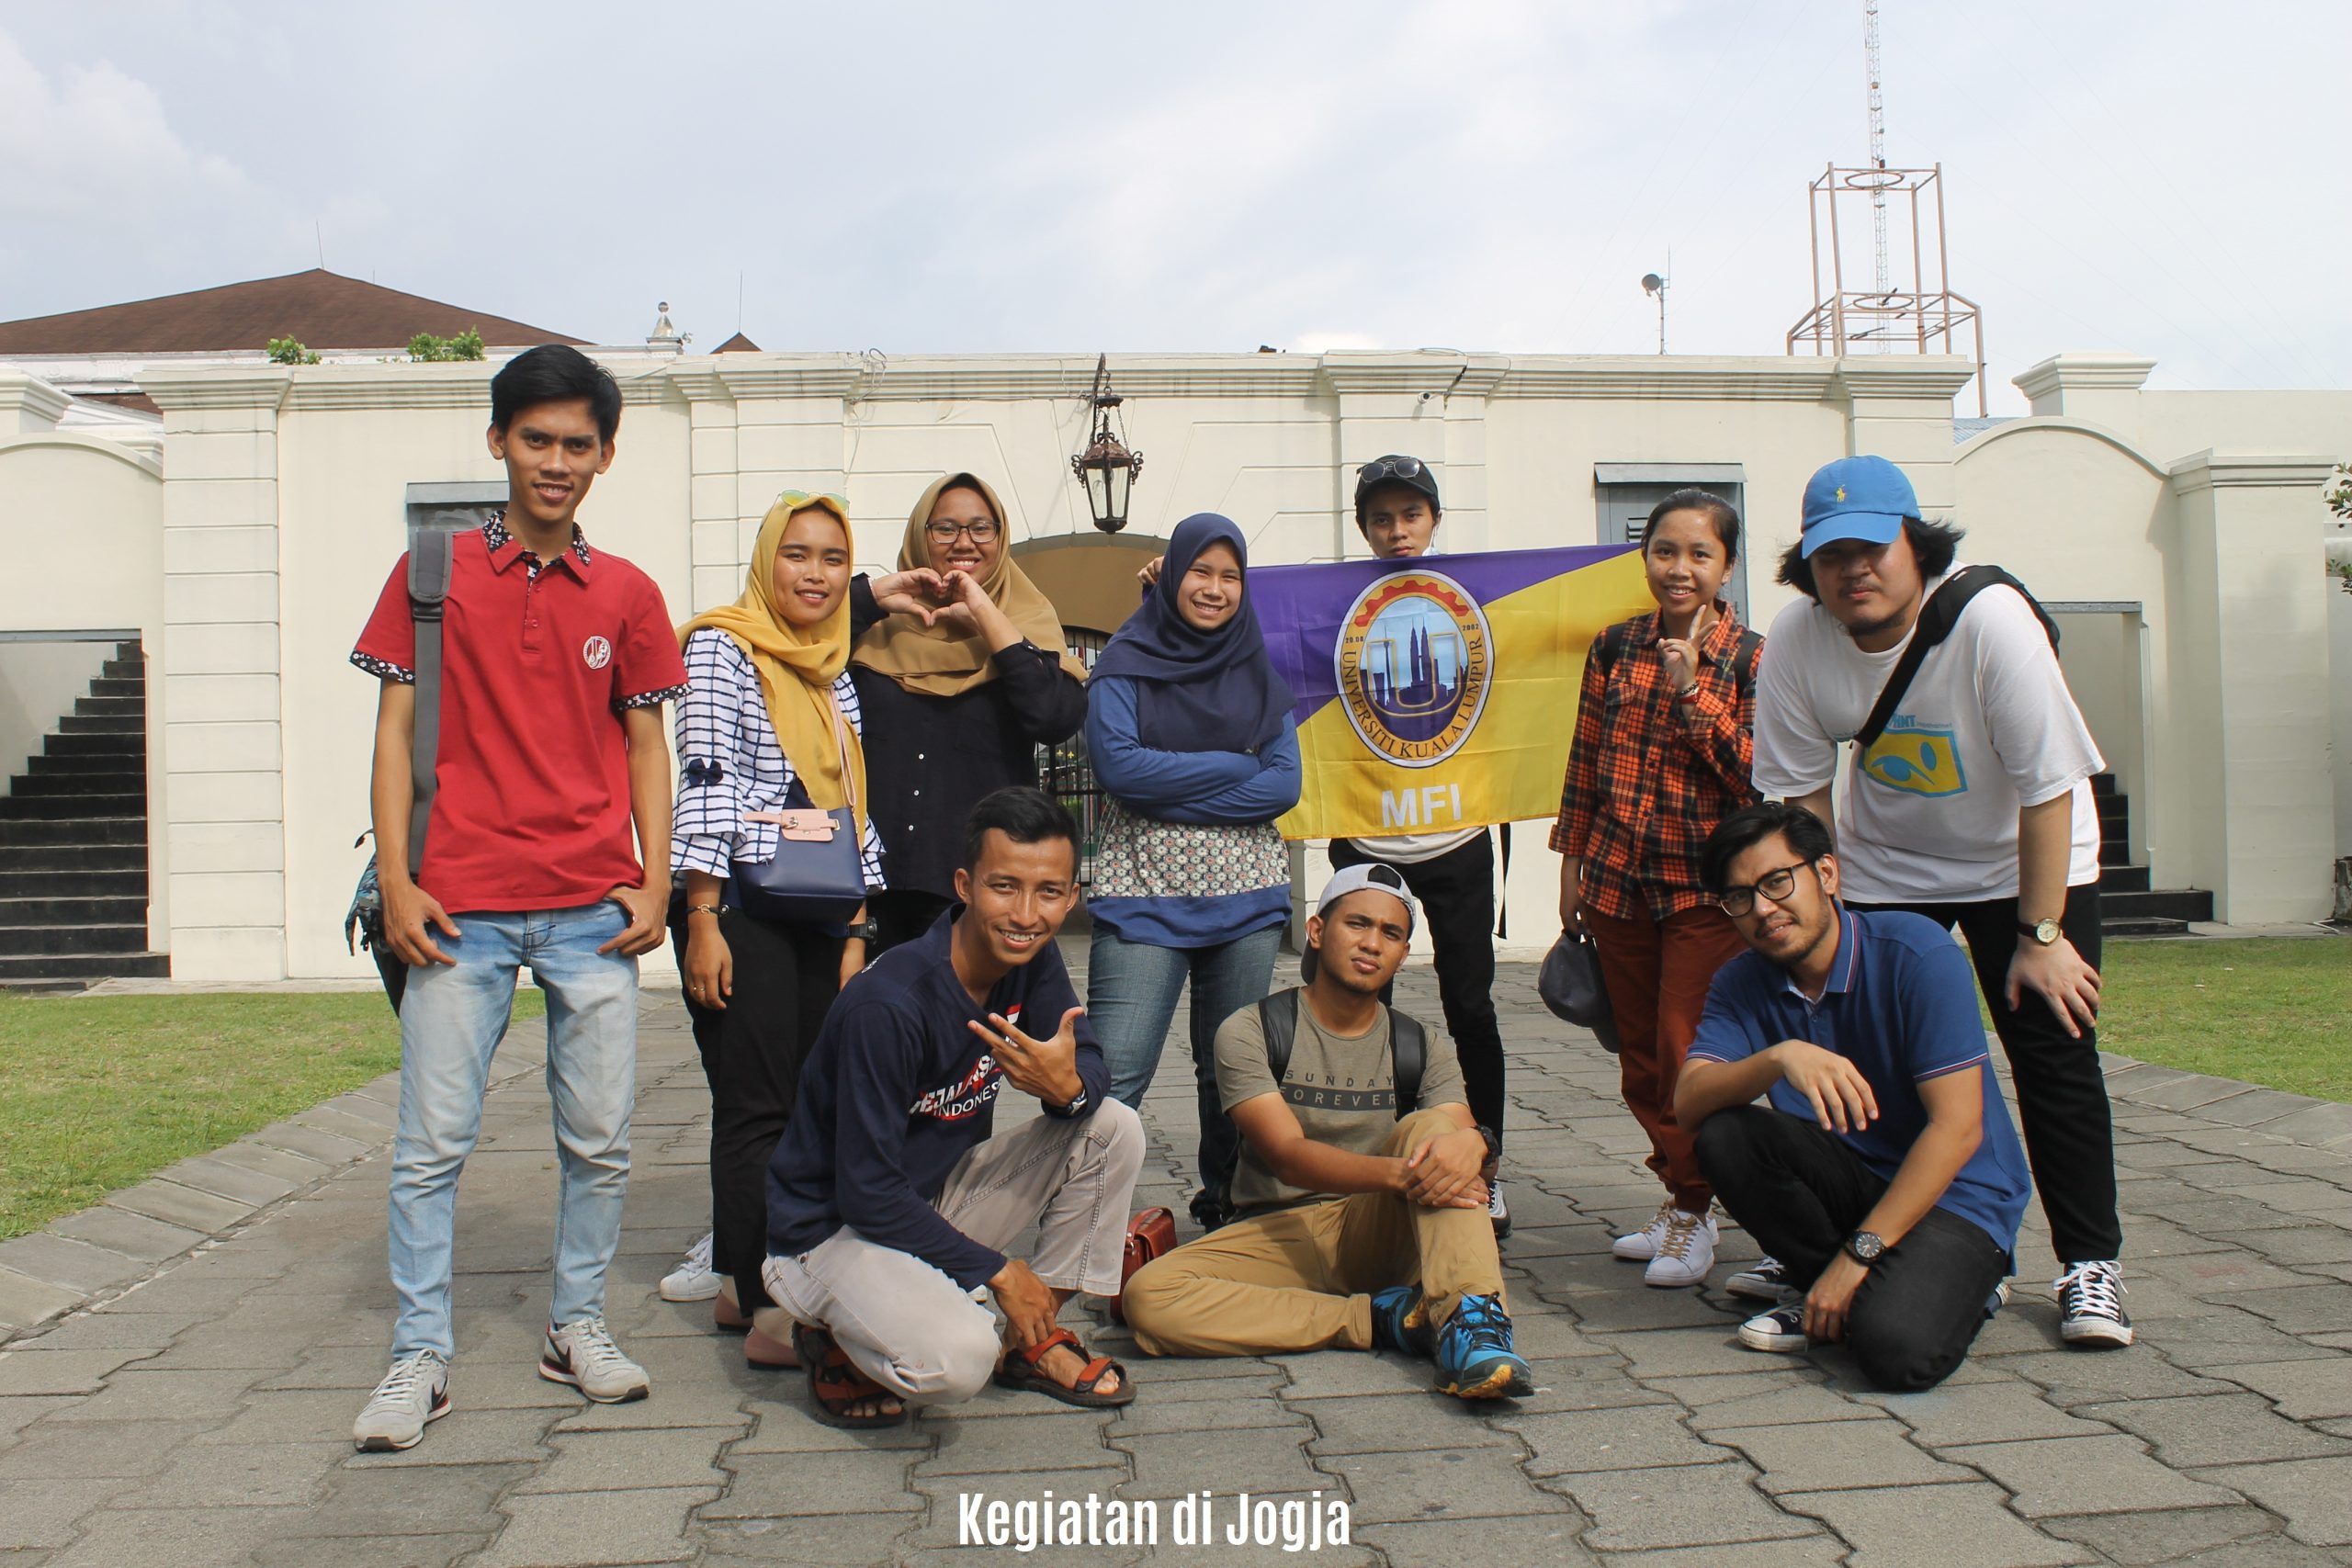 Kegiatan Liburan Mahasiswa UNIKL dalam Rangkaian Program Student Exchange Pergi ke Jogja